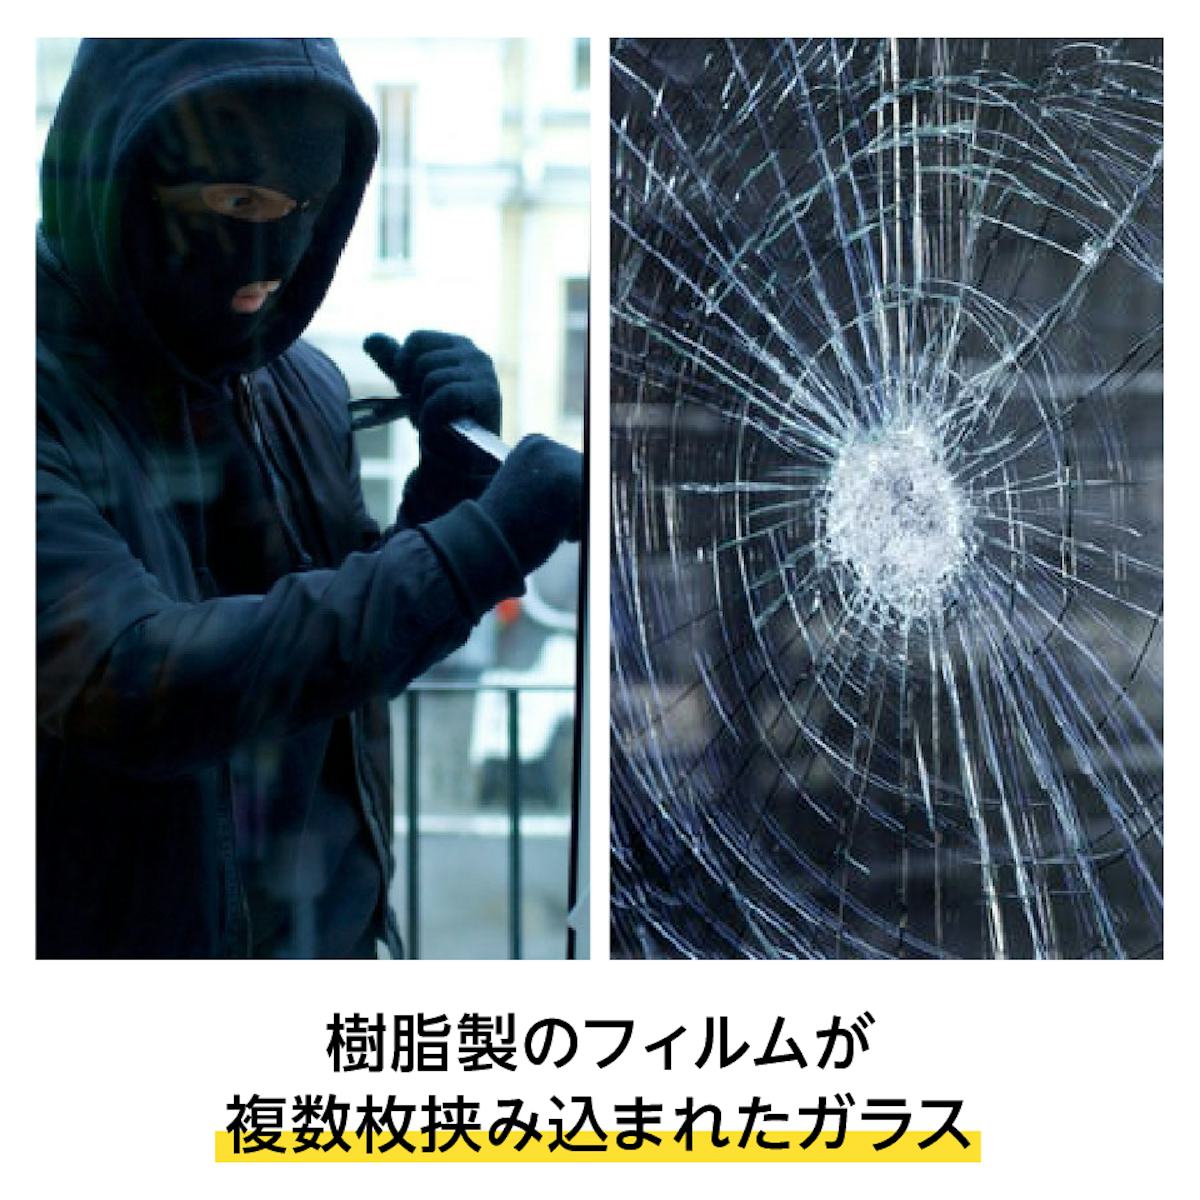 防犯ガラスとは - 樹脂製のフィルムが複数枚挟みこまれたガラス／空き巣、台風などからガラスが割れるのを防ぐ